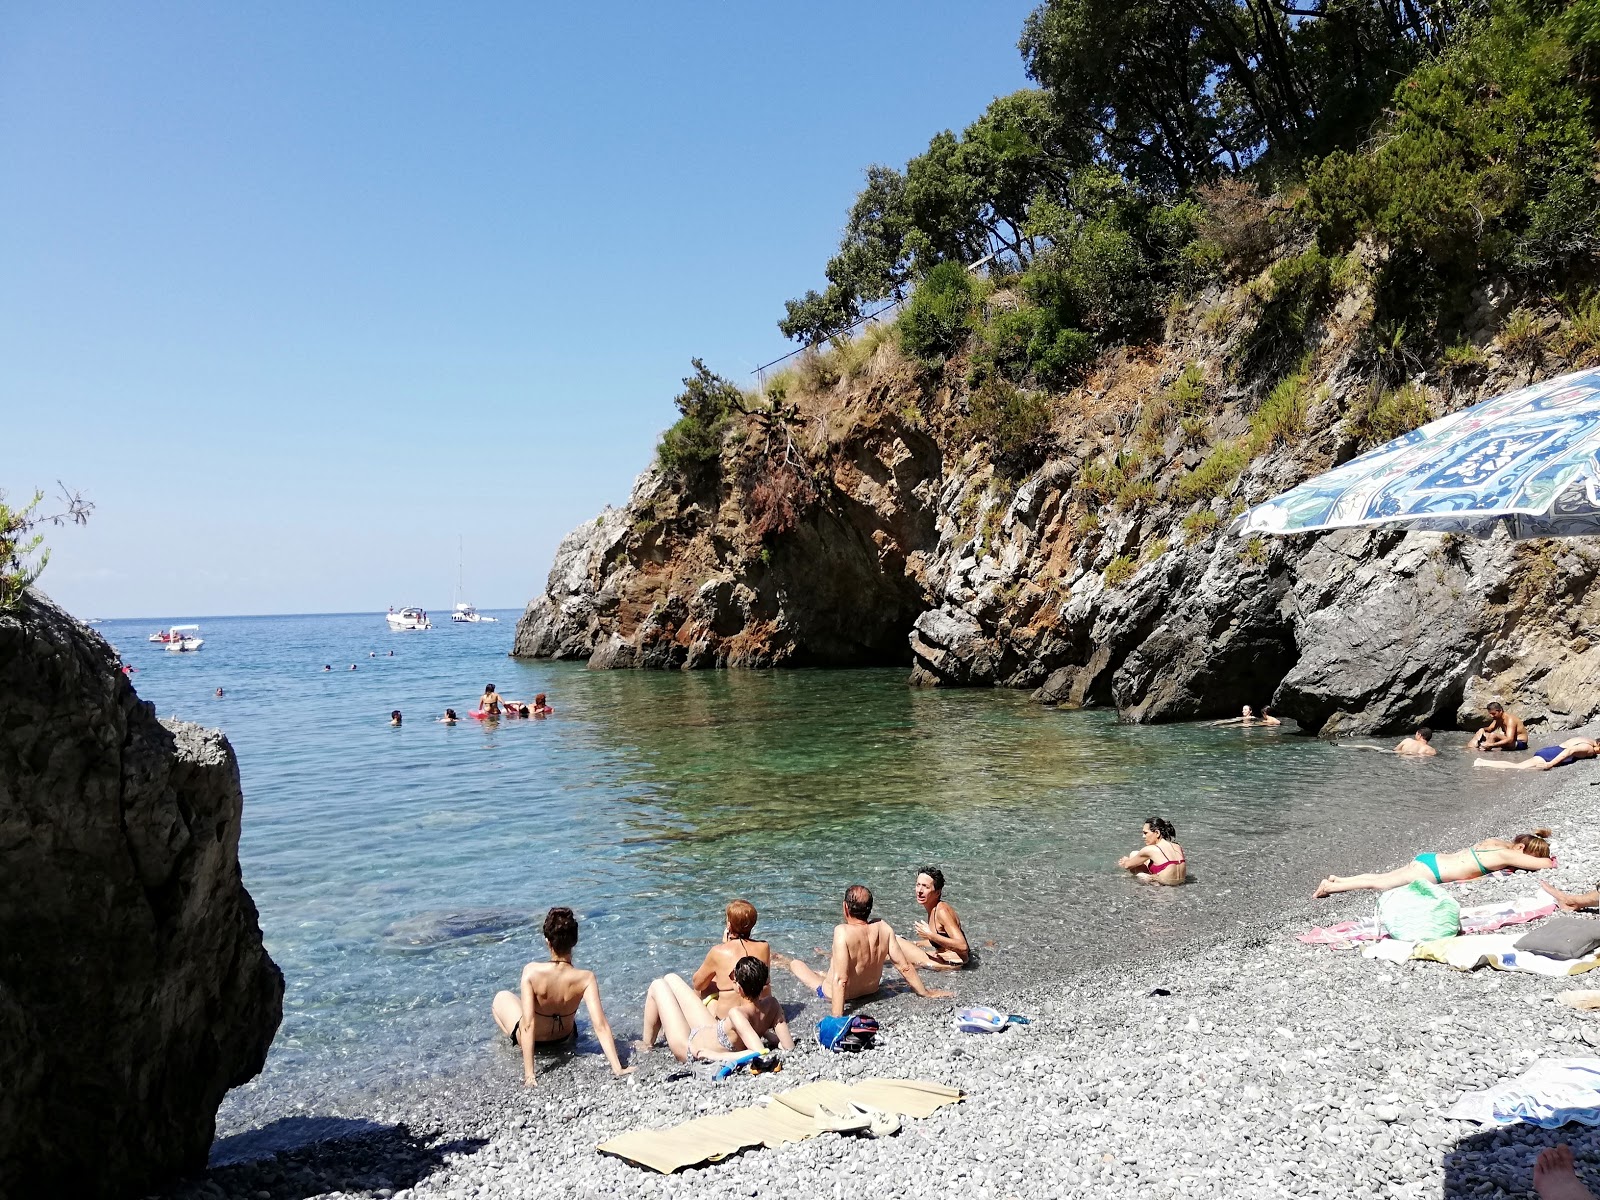 Photo of Spiaggia Cala del Citro with gray fine pebble surface